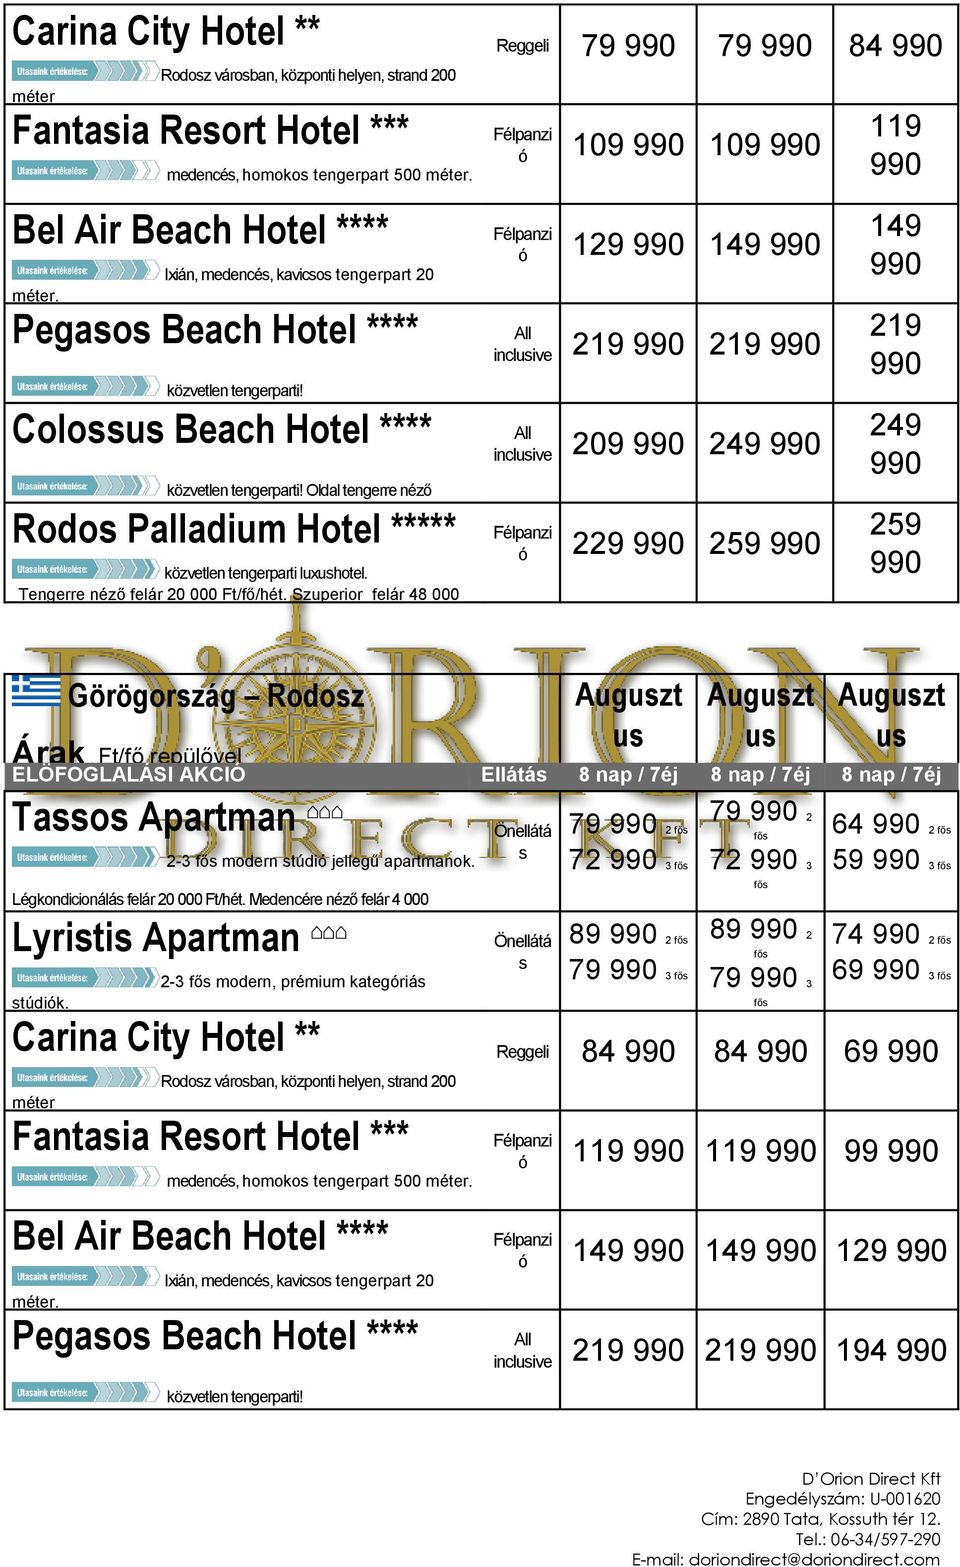 Pegao Beach Hotel **** közvetlen tengerparti! Colou Beach Hotel **** Szuperior felár 32 000 fő/hét. Tengerre néző felár 15000 közvetlen tengerparti! Oldal tengerre néző zobák.